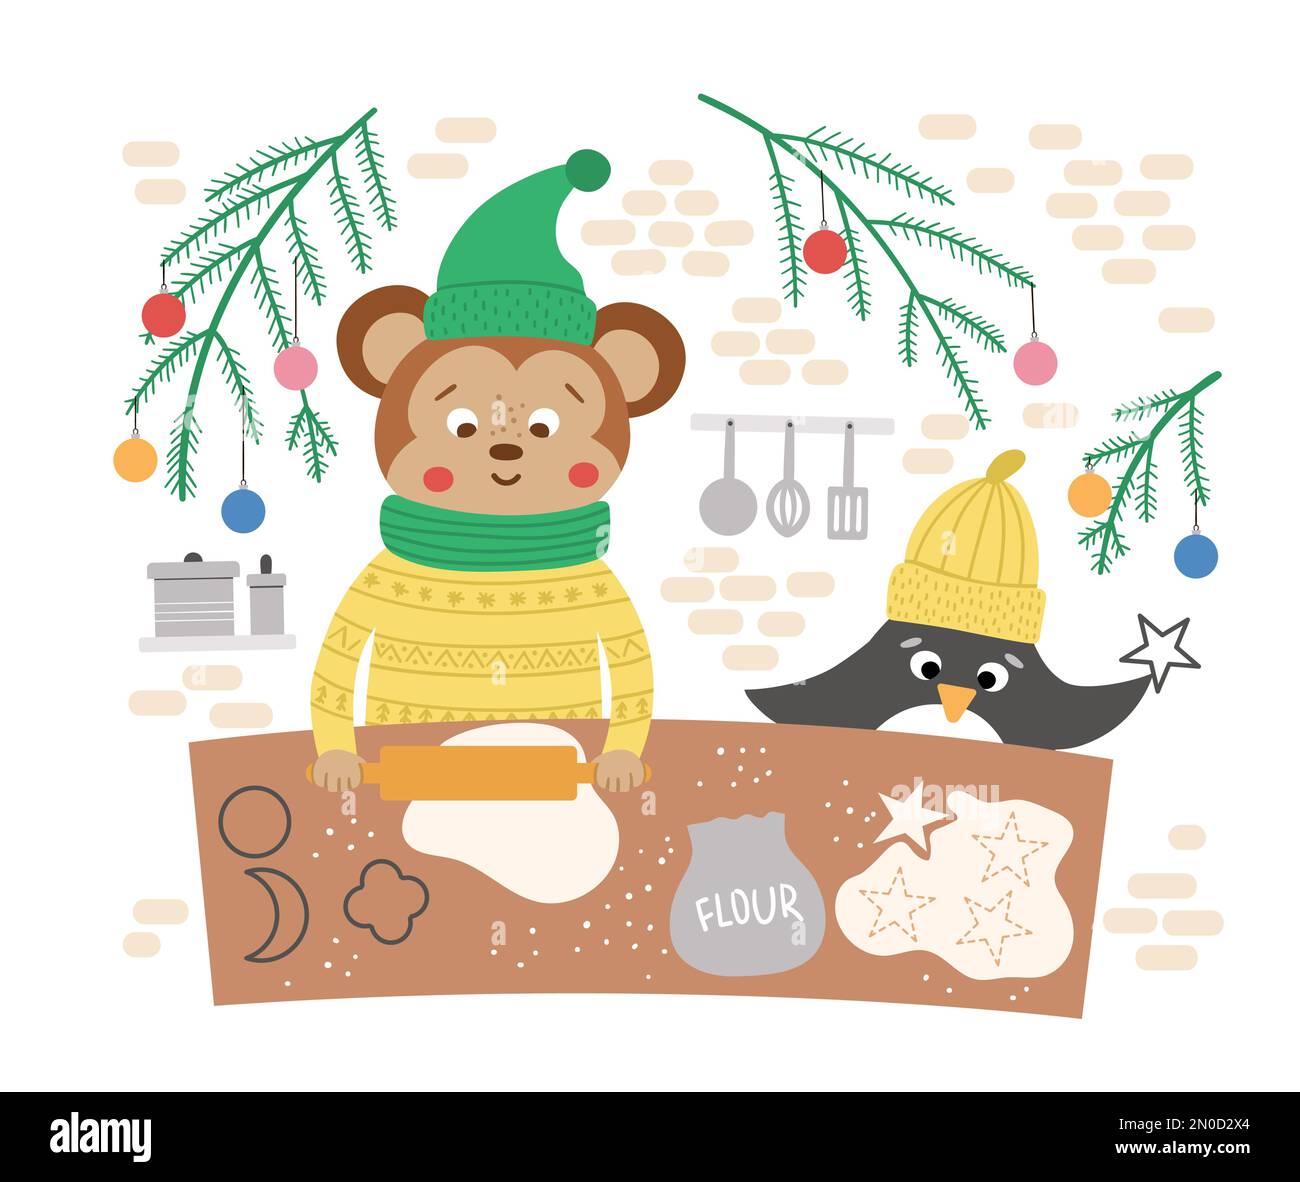 Süße Weihnachtszubereitungsszene mit Keksen von Affen und Pinguinen. Winterillustrierung mit Tieren. Lustiges Kartendesign. Neujahrsaufdruck mit Smil Stock Vektor